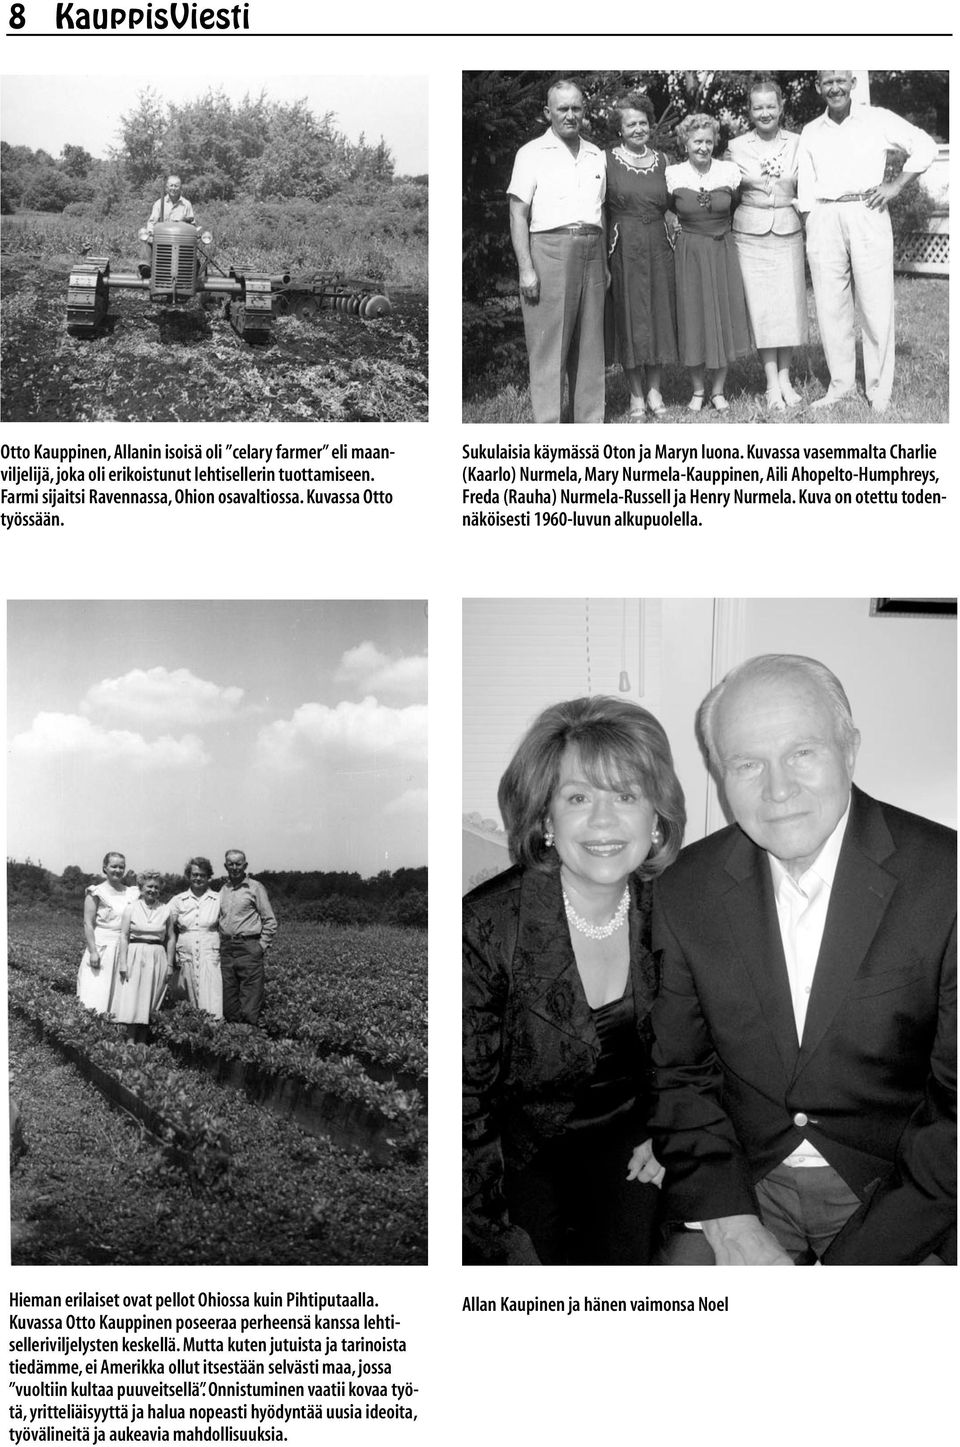 Kuvassa vasemmalta Charlie (Kaarlo) Nurmela, Mary Nurmela-Kauppinen, Aili Ahopelto-Humphreys, Freda (Rauha) Nurmela-Russell ja Henry Nurmela. Kuva on otettu todennäköisesti 1960-luvun alkupuolella.